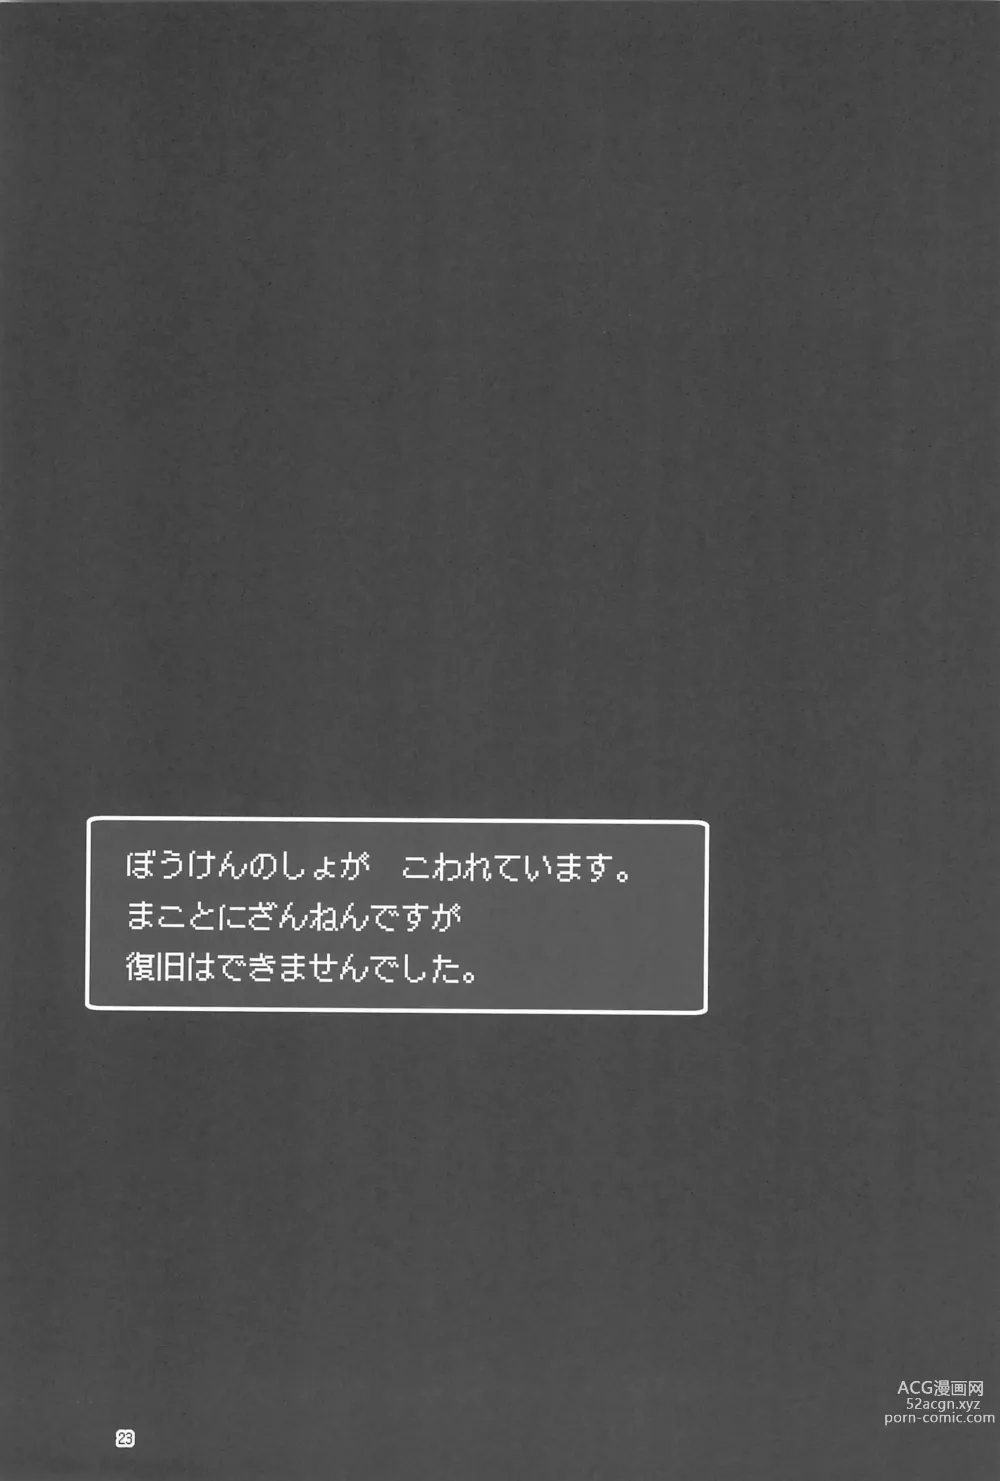 Page 23 of doujinshi Makotoni Zannen desu ga Bouken no Sho 9 wa Kiete Shimaimashita.